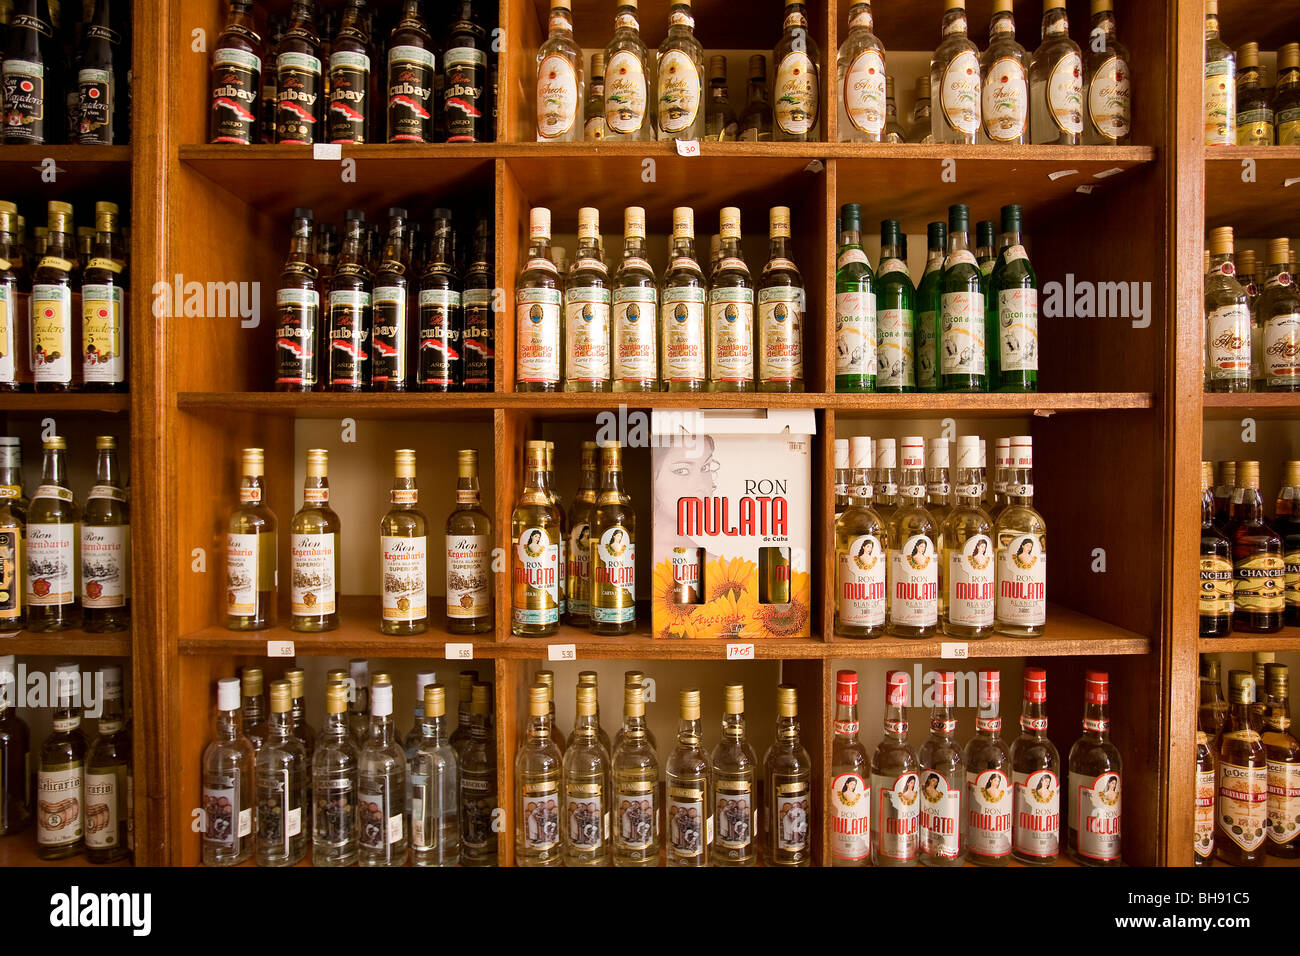 Cuban Rum, Camagueey, Caribbean Sea, Cuba Stock Photo